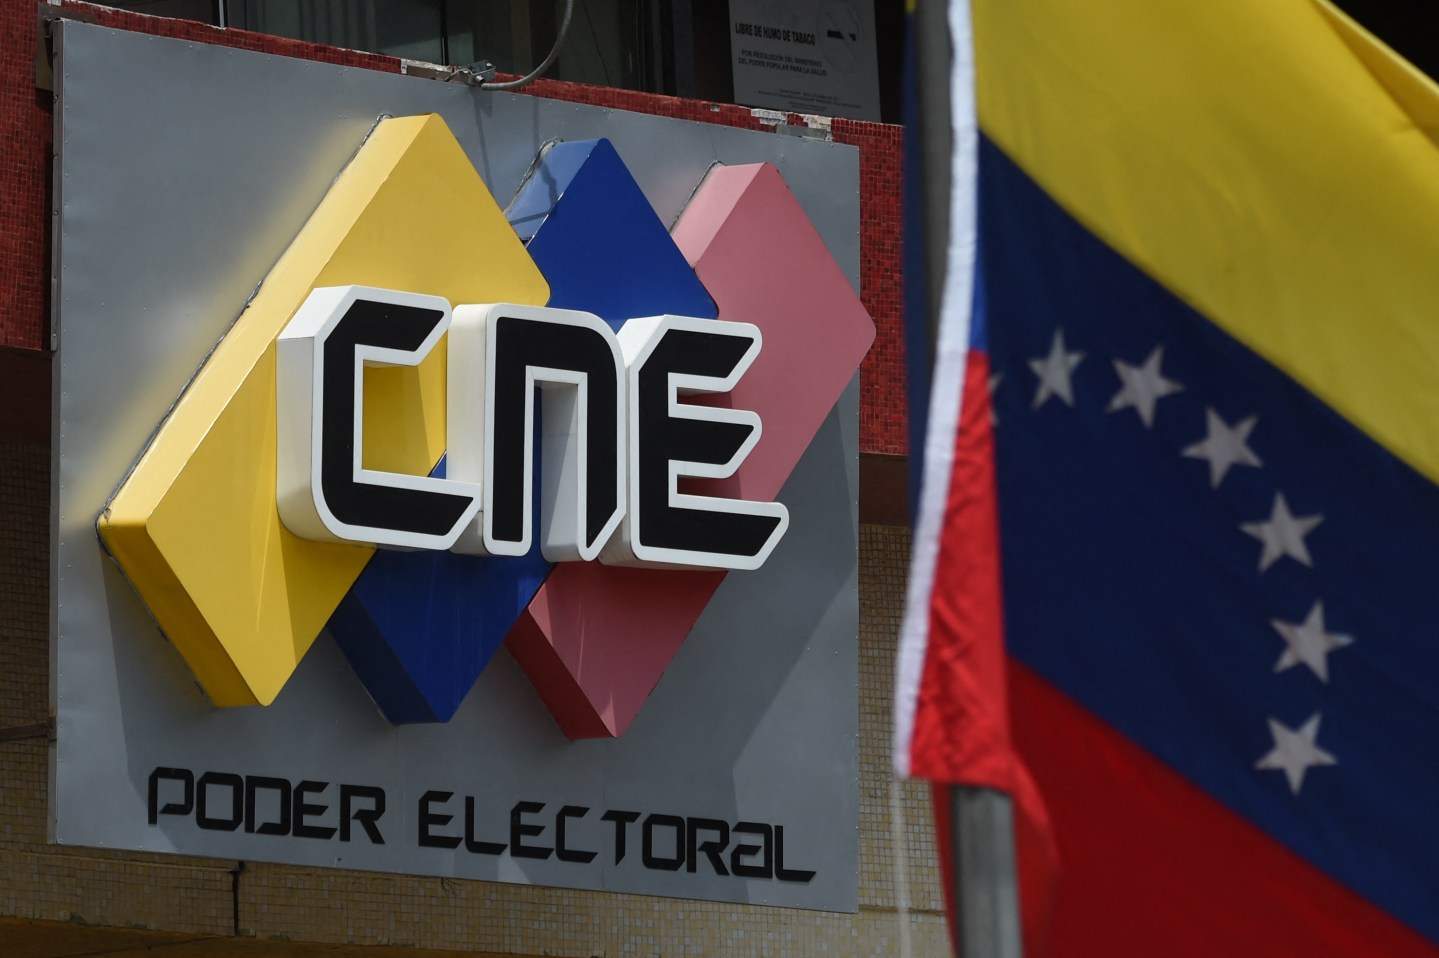 La verdadera razón por la que los migrantes venezolanos no pueden votar en el exterior